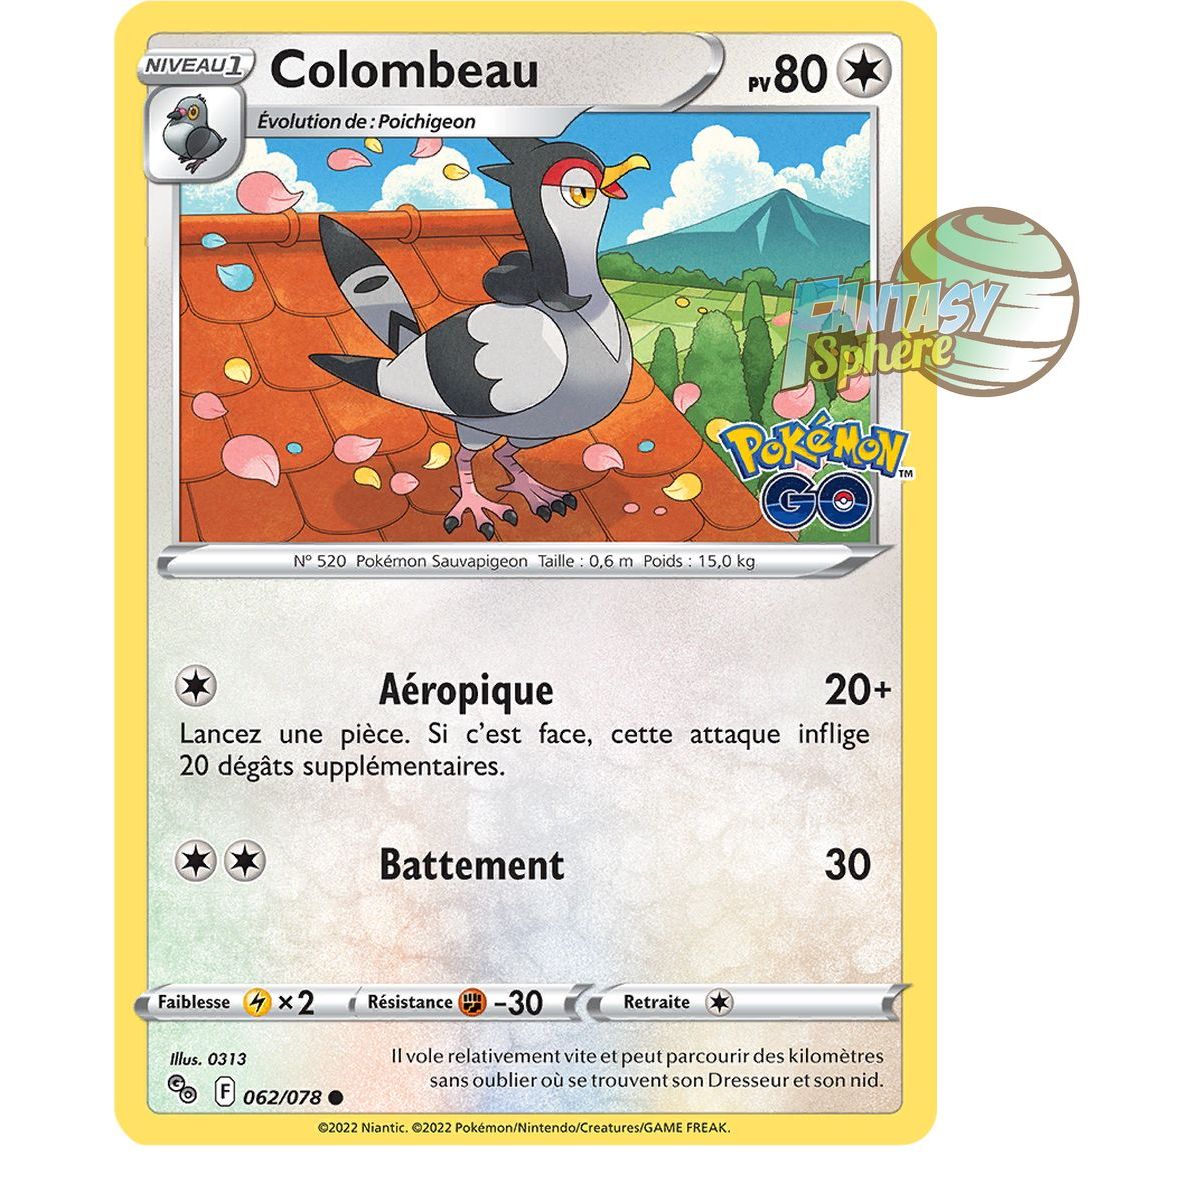 Colombeau - Commune 62/78 - Epee et Bouclier 10.5 Pokemon GO